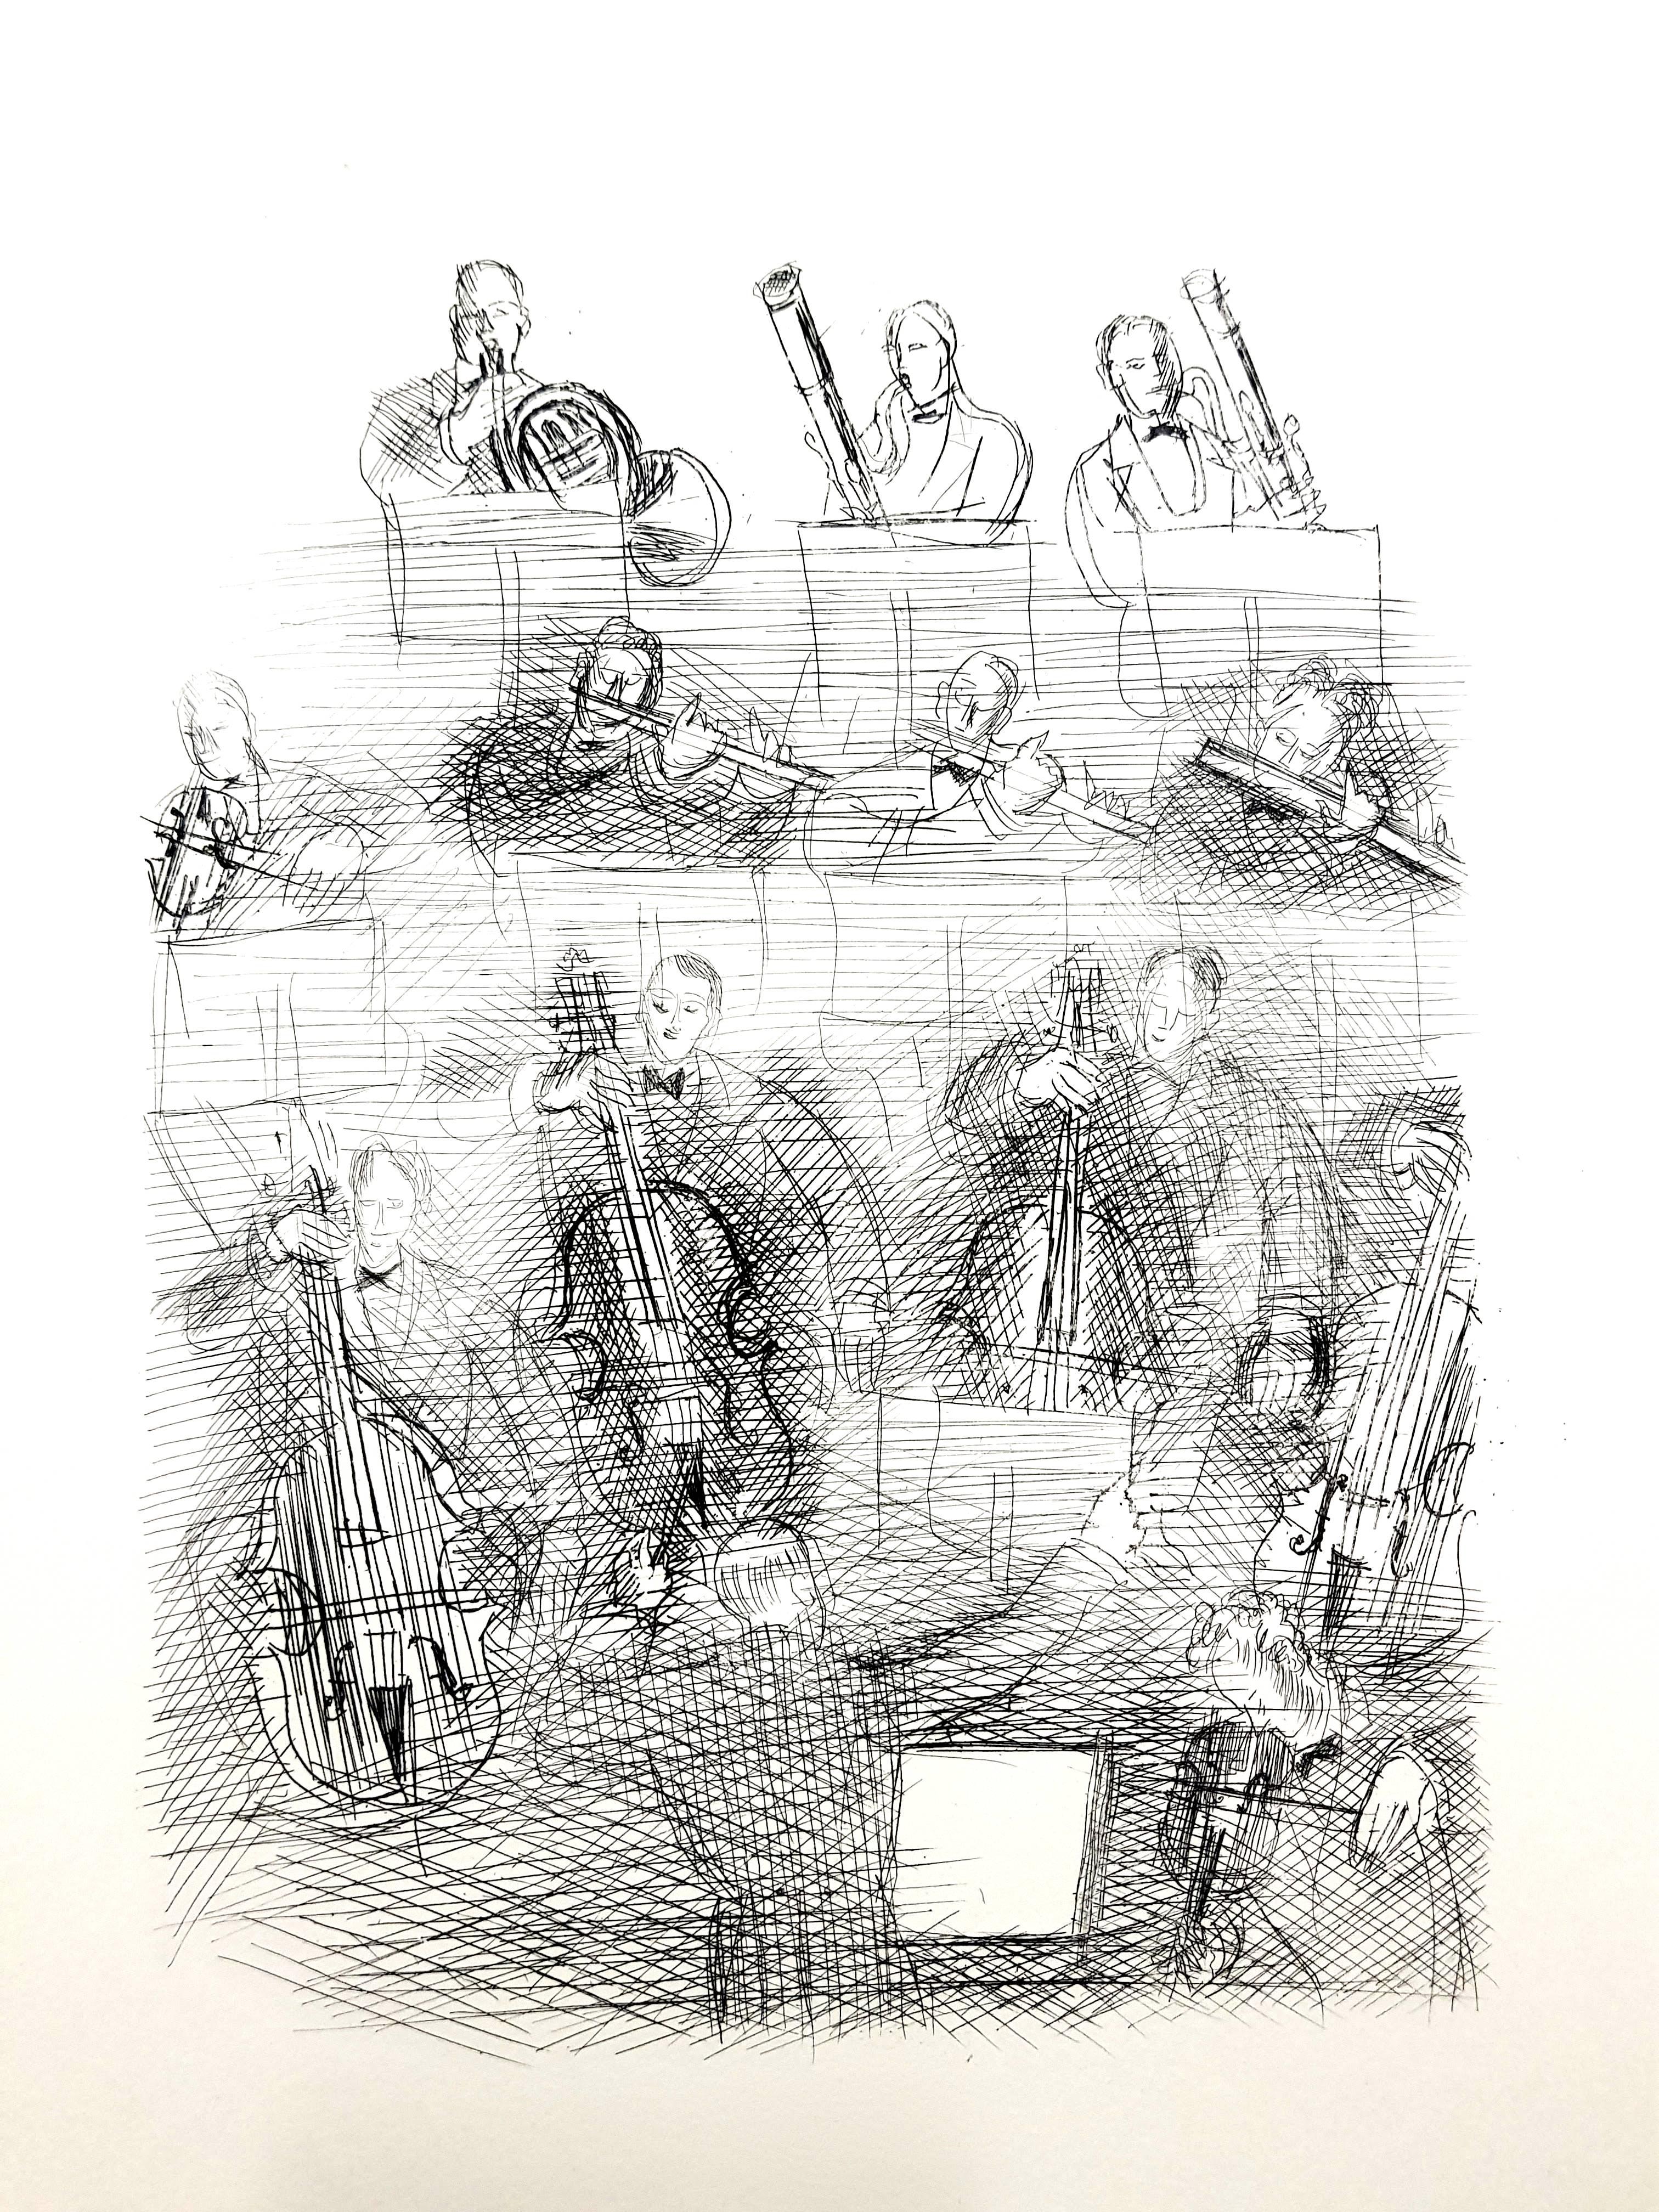 Raoul Dufy - Orchester - Original-Radierung
Abmessungen: 13 x 10".
Auflage von 200 Stück
1940
Ausgabe Les Bibliophiles du Palais, Paris
Unsigniert und nicht nummeriert wie ausgegeben